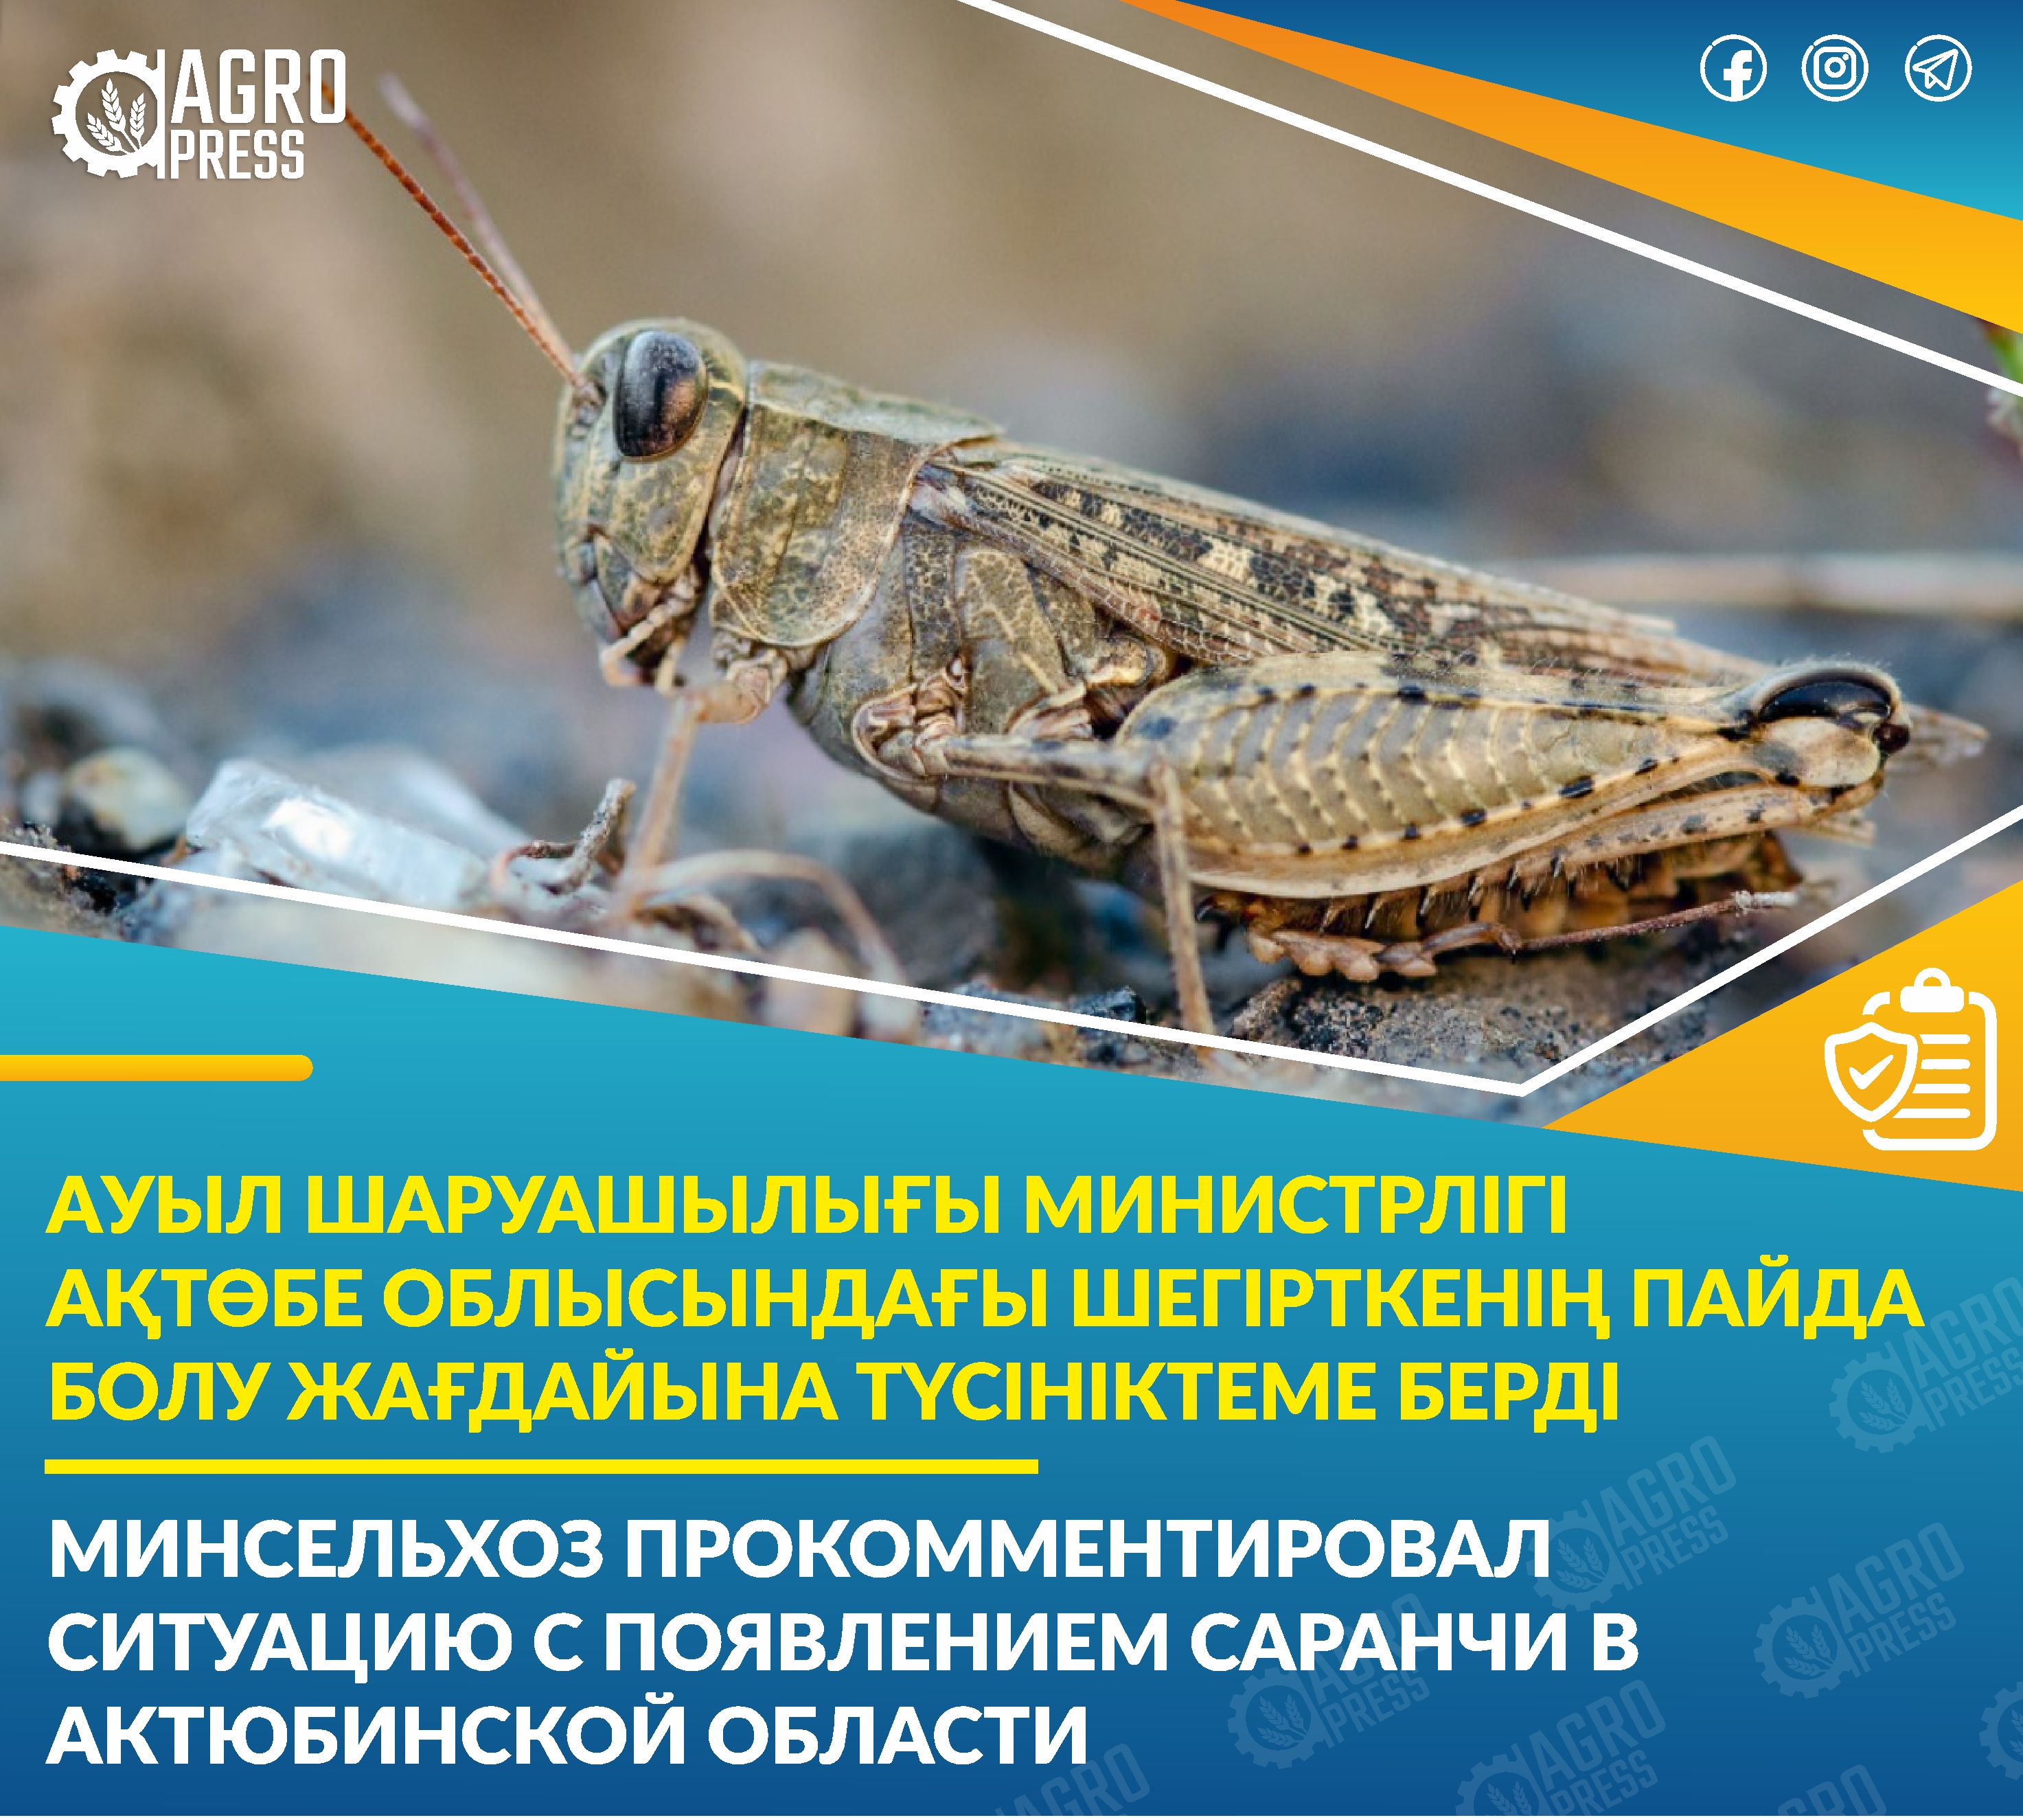 Минсельхоз прокомментировал ситуацию с появлением саранчи в Актюбинской области